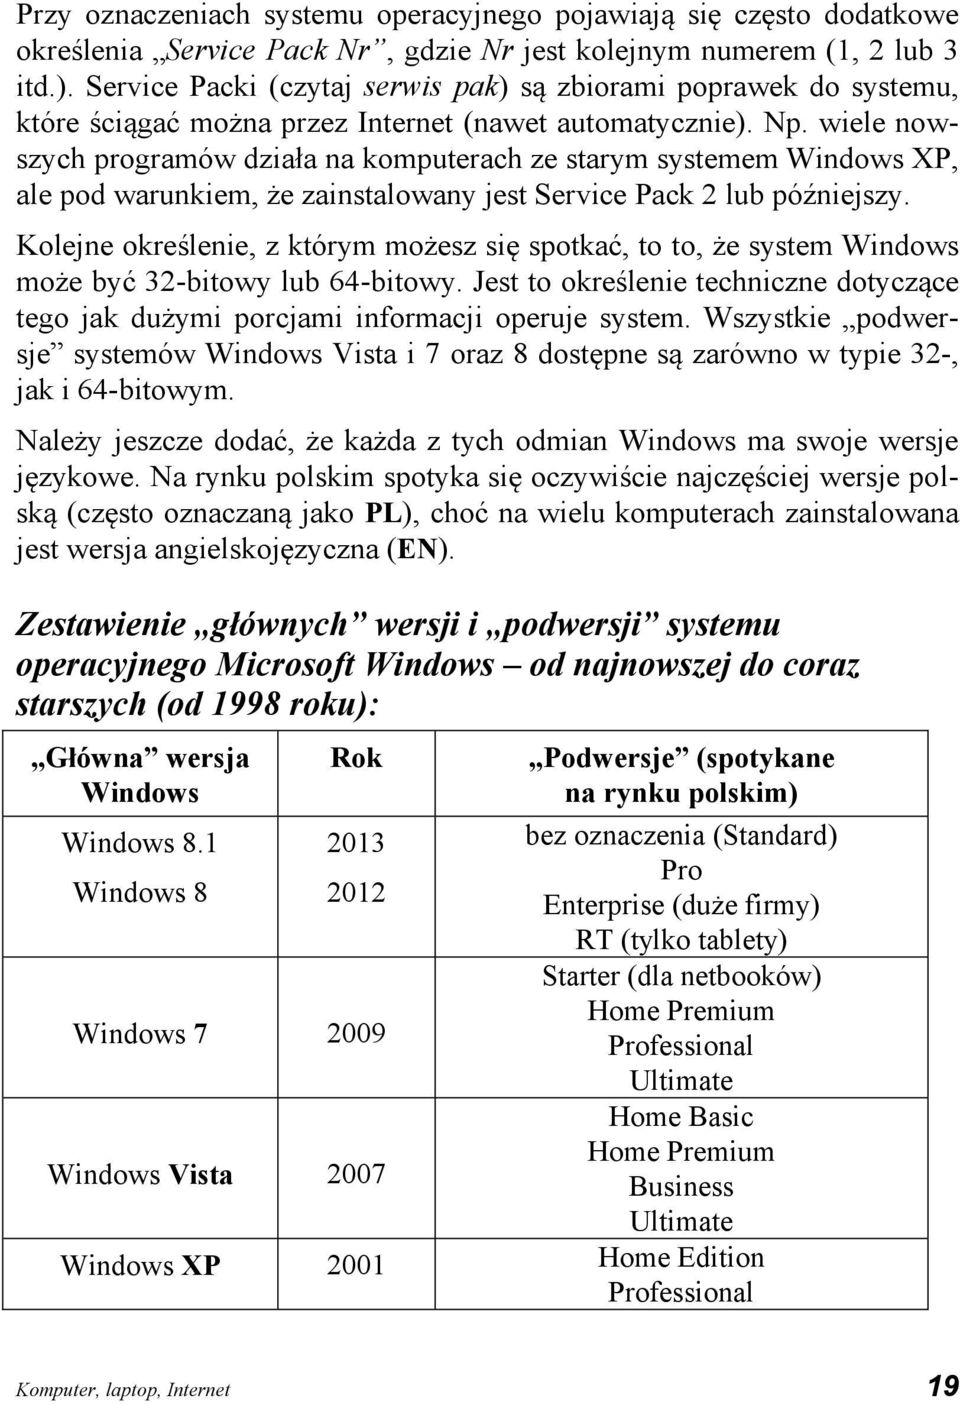 wiele nowszych programów działa na komputerach ze starym systemem Windows XP, ale pod warunkiem, że zainstalowany jest Service Pack 2 lub późniejszy.